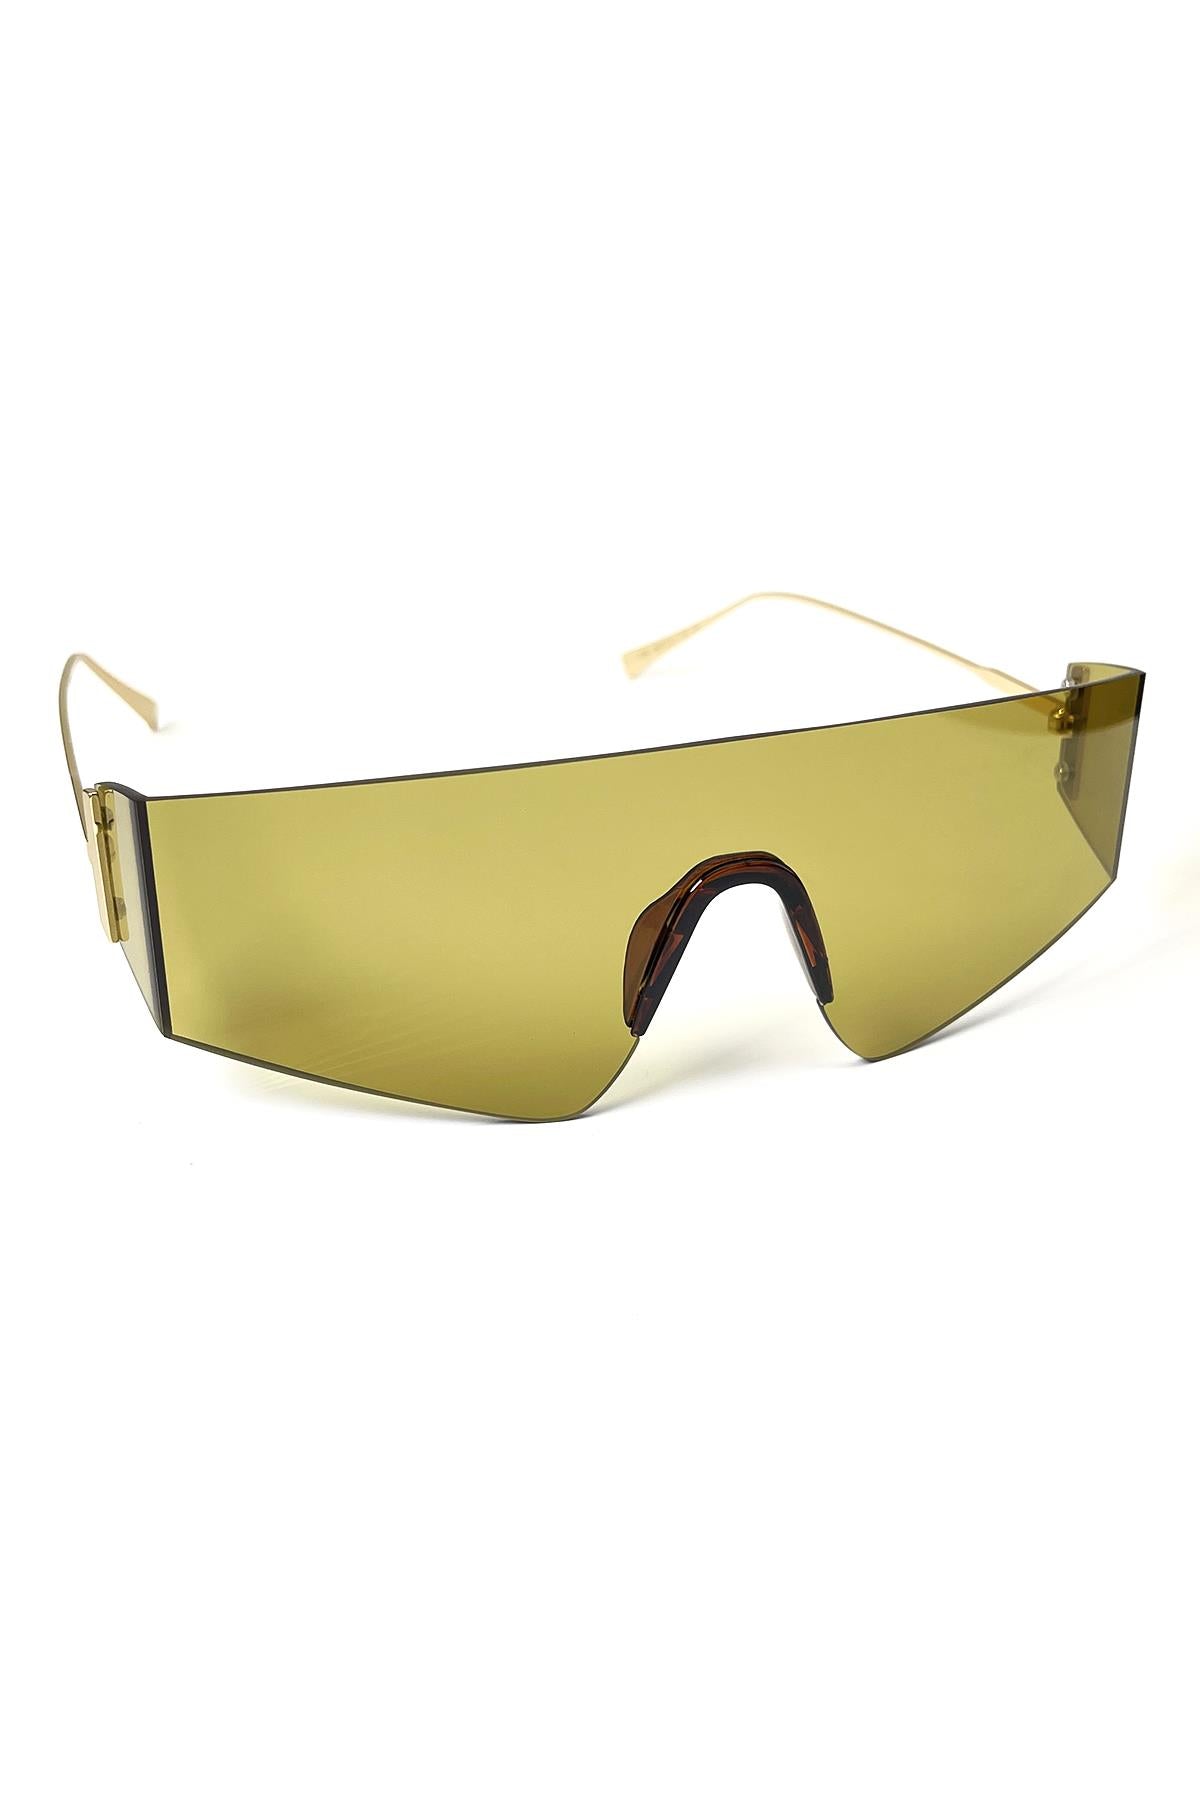 FRNCH Altın Sap Kahverengi Cam Dikdörtgen Model Erkek Güneş Gözlüğü FRG1040-140-K2